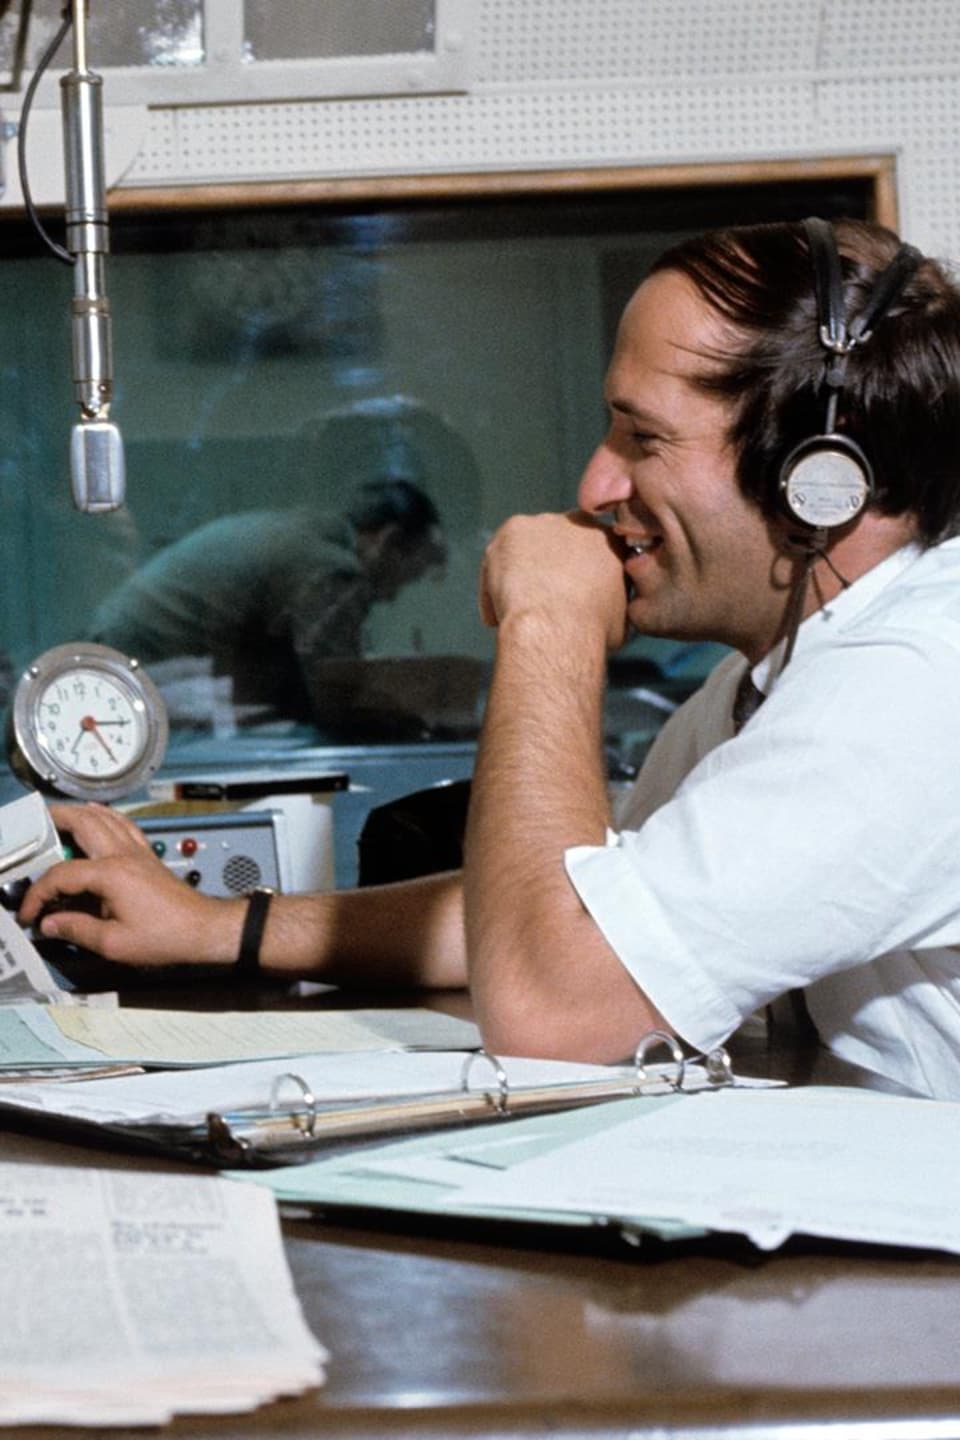 Dans un studio de radio, les animateurs Jean Duceppe et Jacques Houde
discutent, assis de part et d'autre d'un pupitre. Un microphone est suspendu
entre eux. À l'arrière-plan, on voit la régie derrière une vitre.